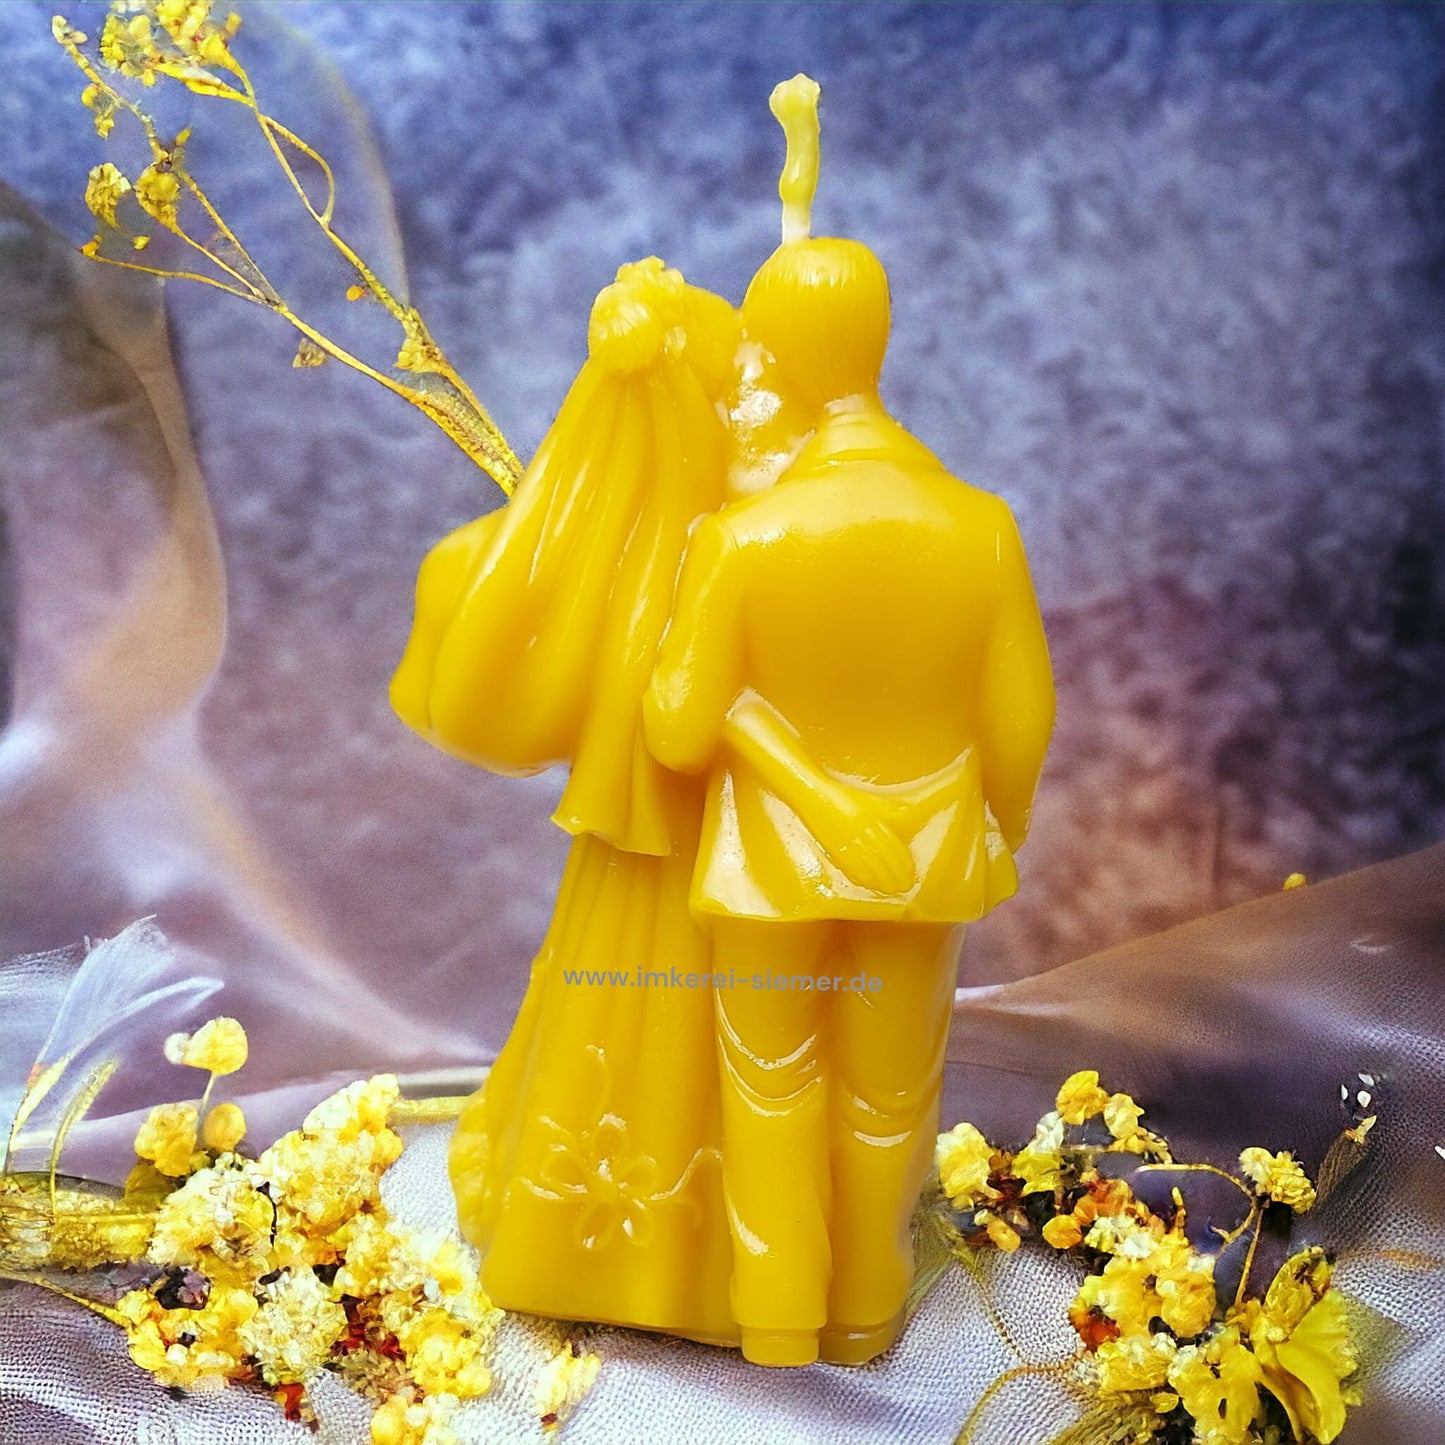 Romantisches Brautpaar - Hochzeitspaar als Bienenwachskerze von Imkerei Siemer